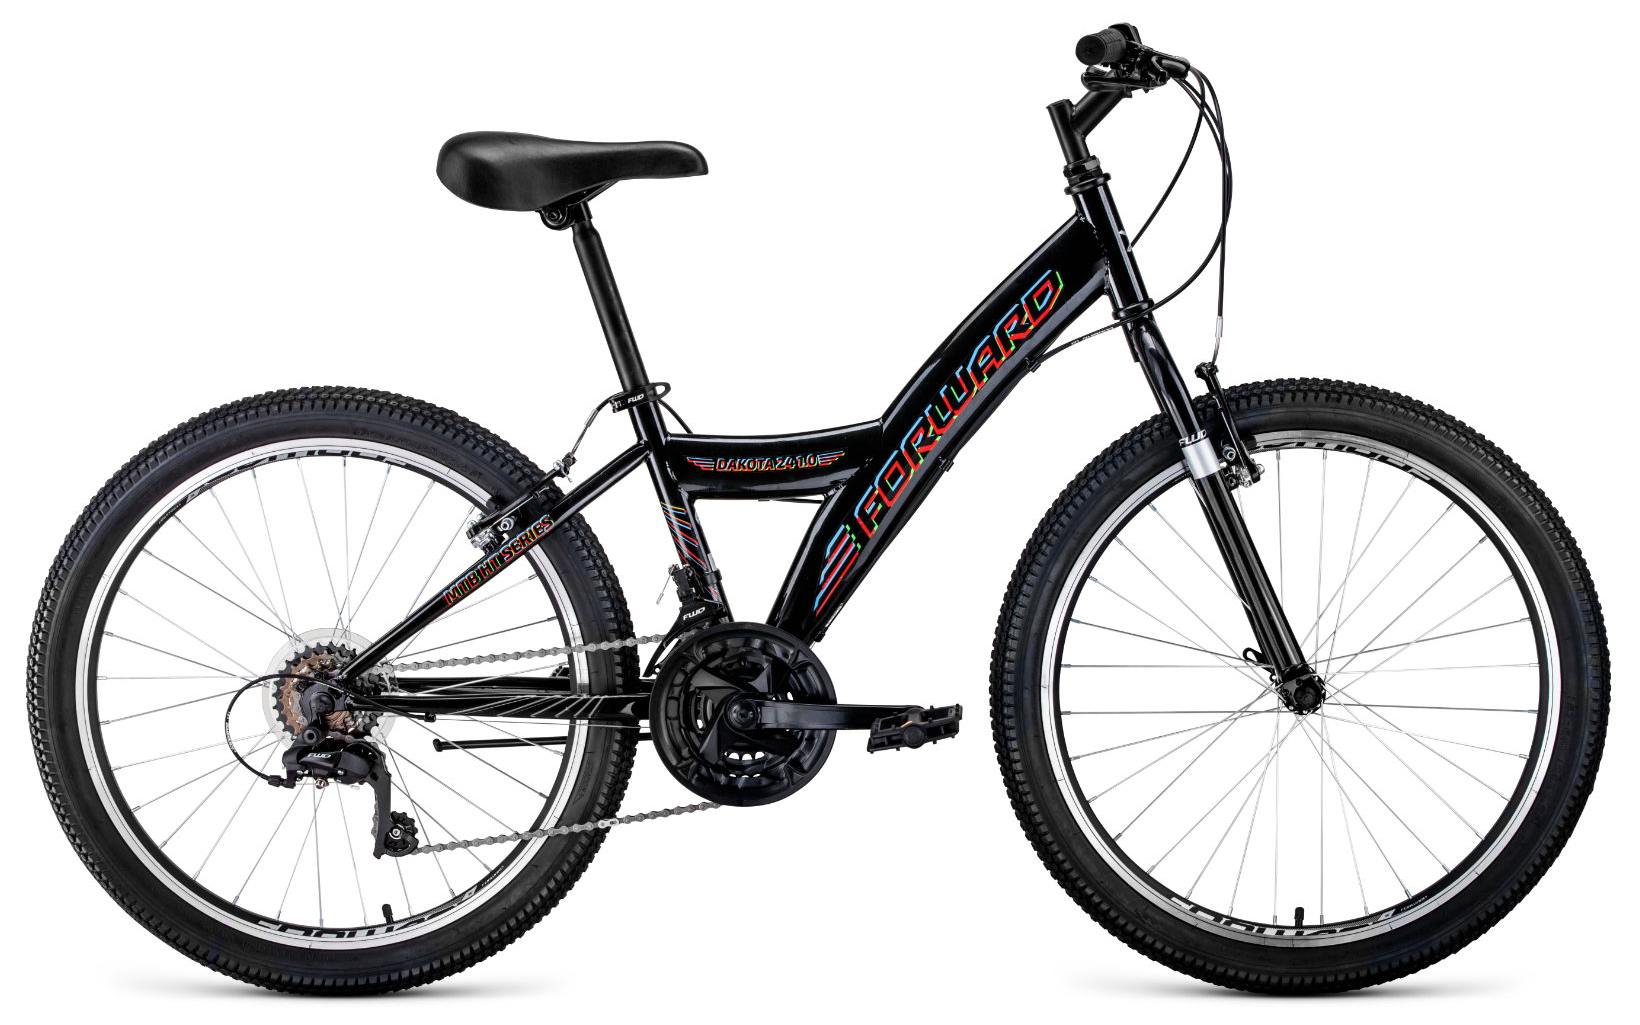  Отзывы о Подростковом велосипеде Forward Dakota 24 1.0 2020